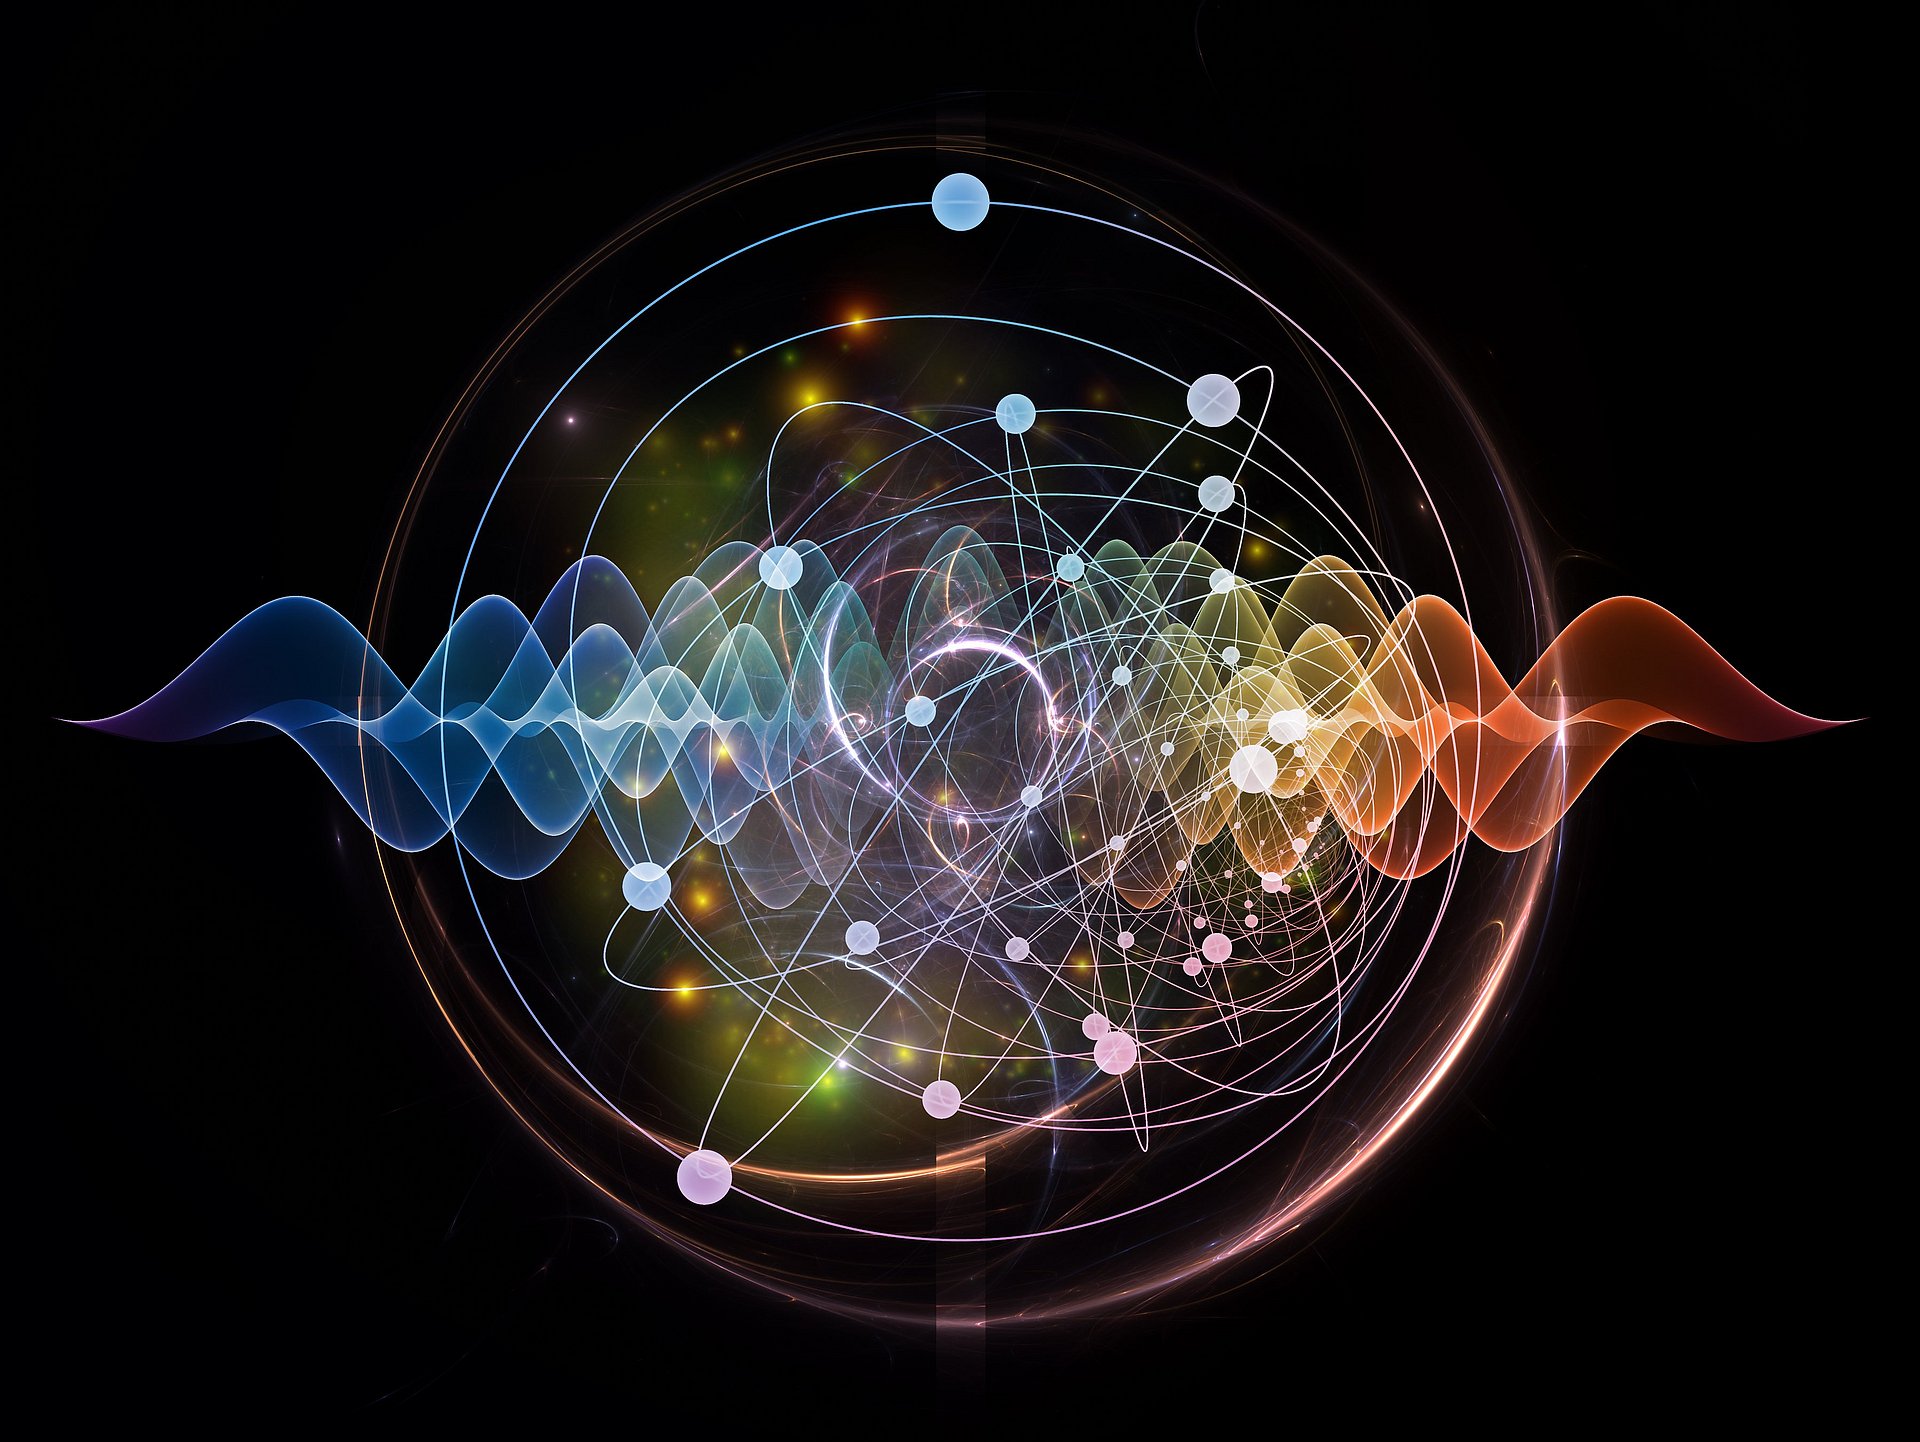 Farbige, abstrakte Darstellung von Atomen und Quantenwellen mit Hilfe von fraktalen Elementen.